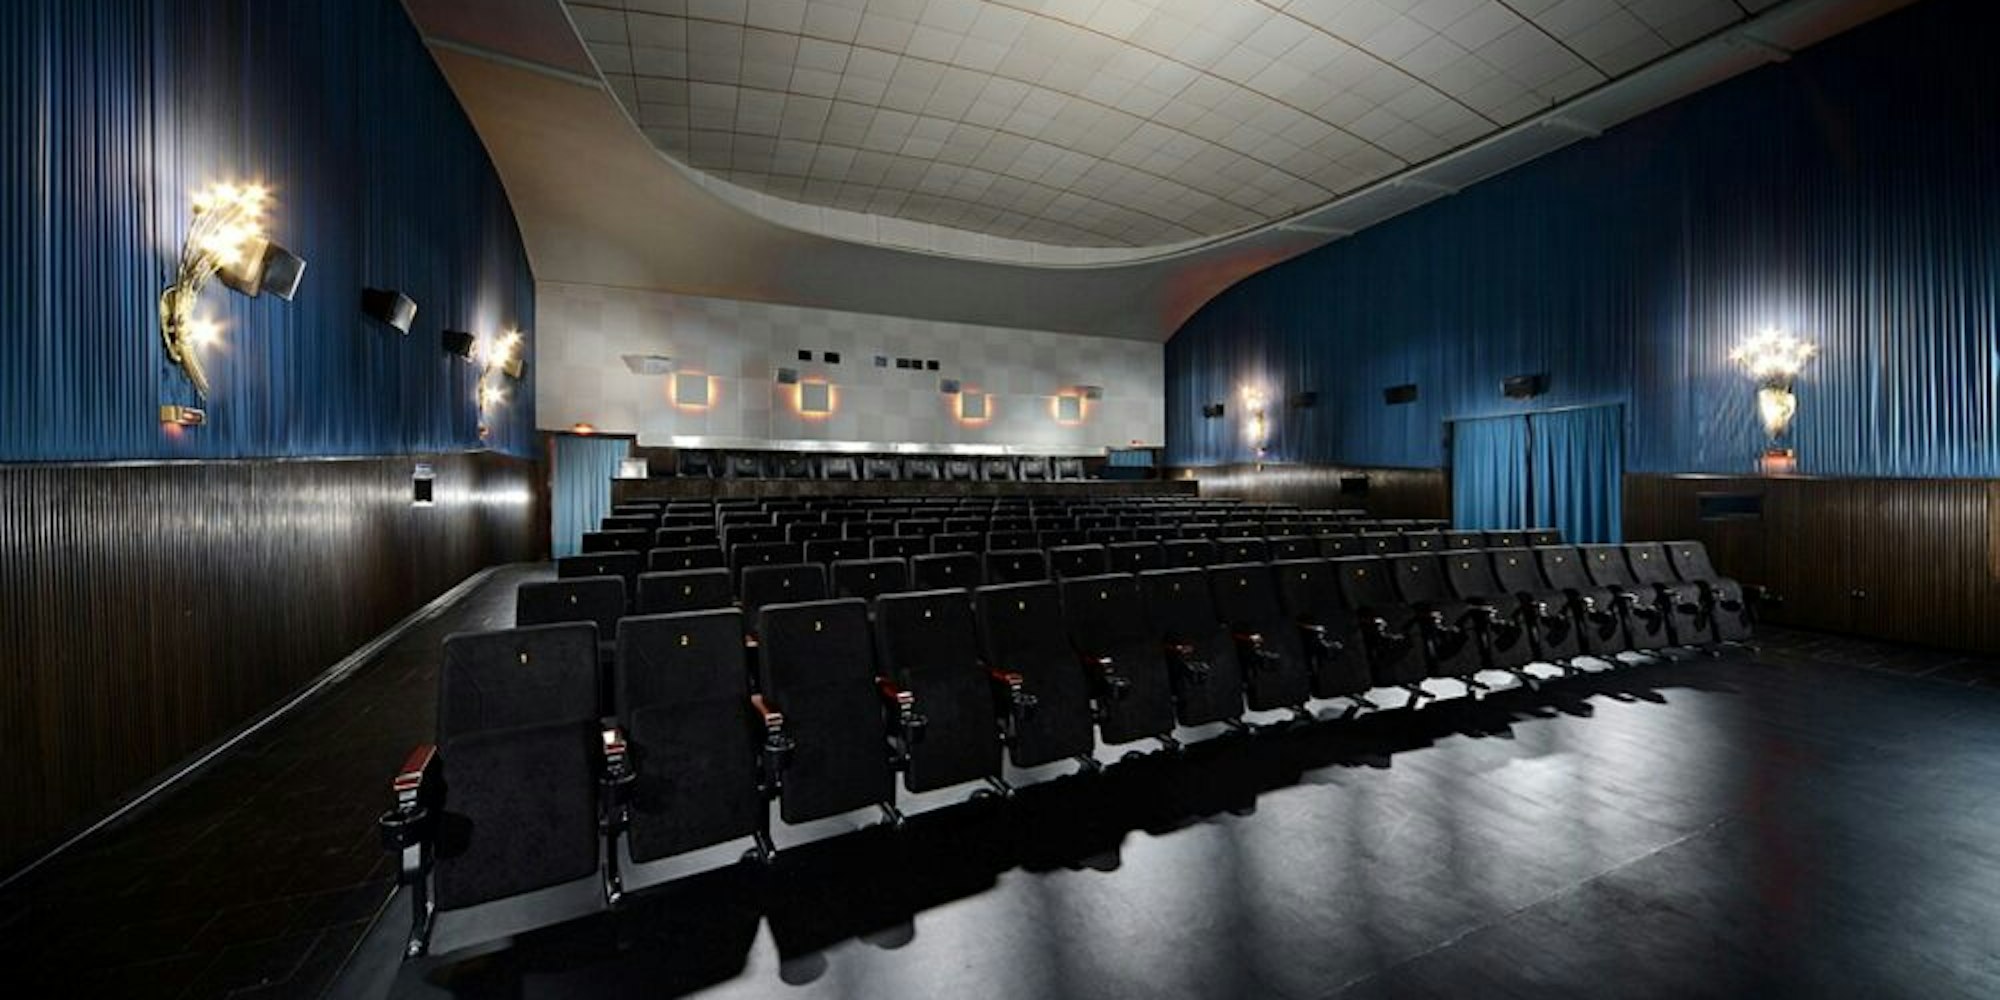 Die Inneneinrichtung des Berli-Theaters stammt aus den 50er Jahren. Das macht den Charme des Kinos aus.